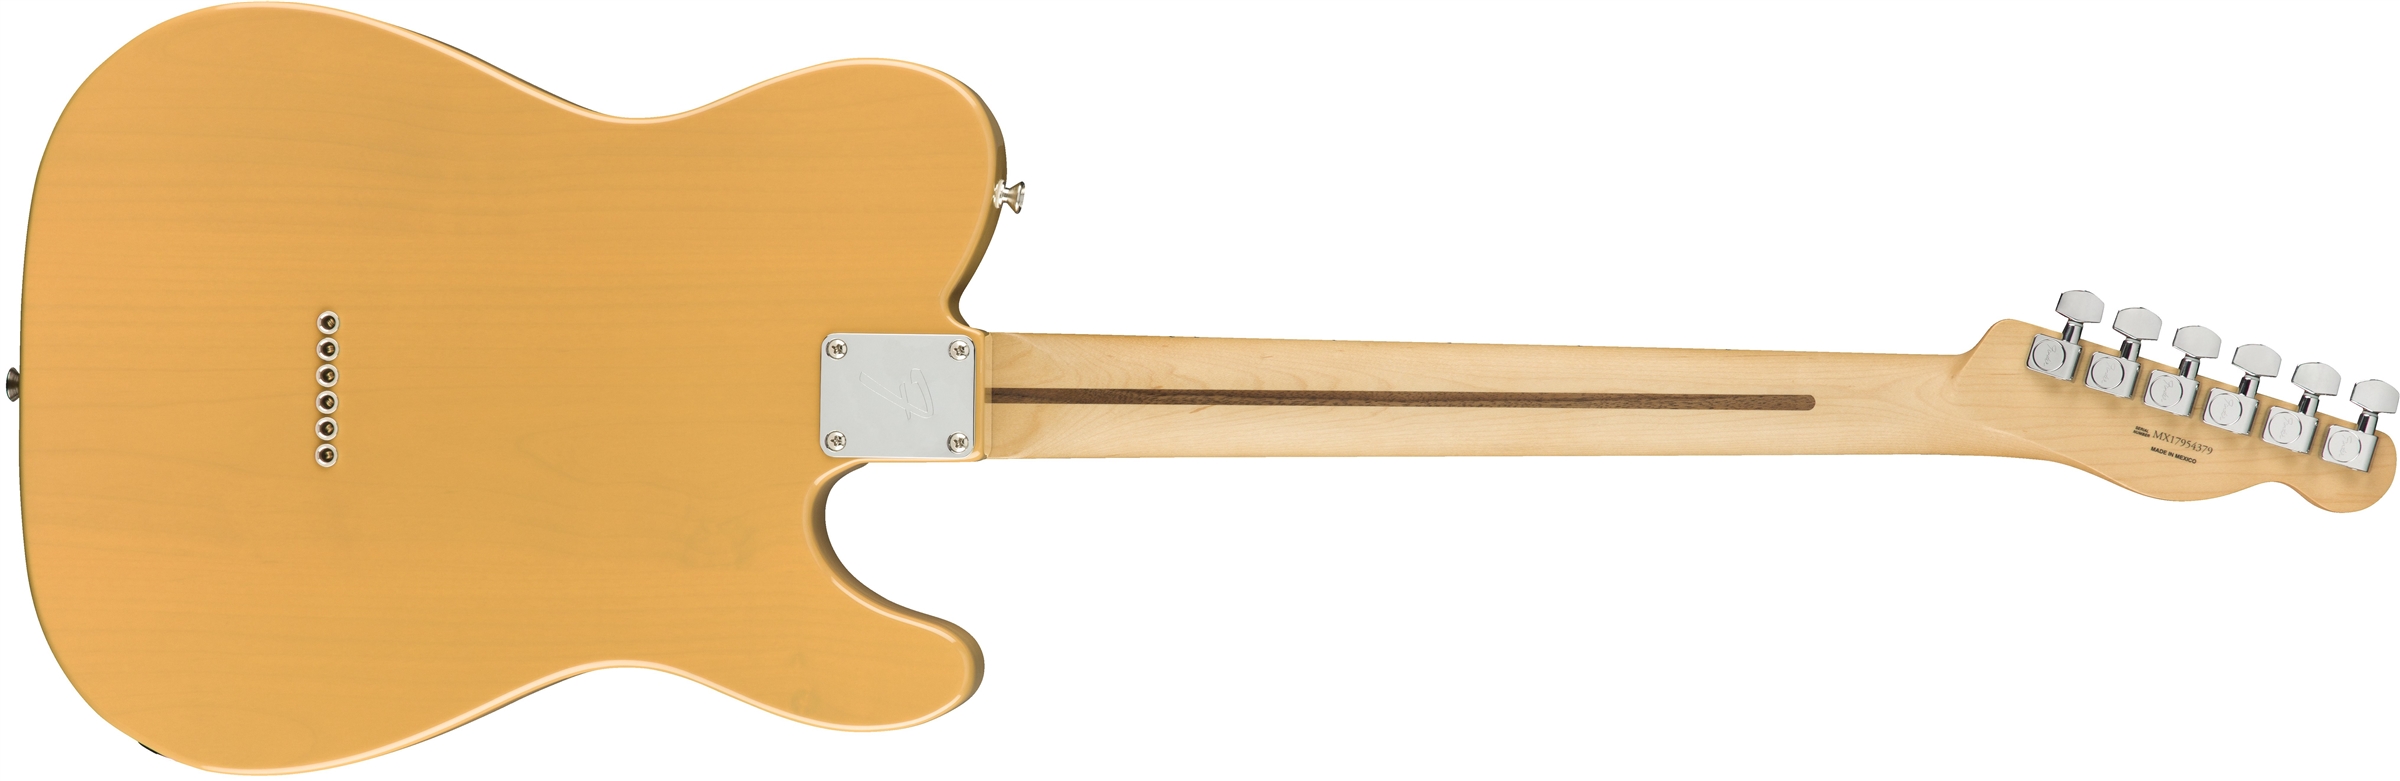 Fender Tele Player Lh Gaucher Mex 2s Mn - Butterscotch Blonde - E-Gitarre für Linkshänder - Variation 1